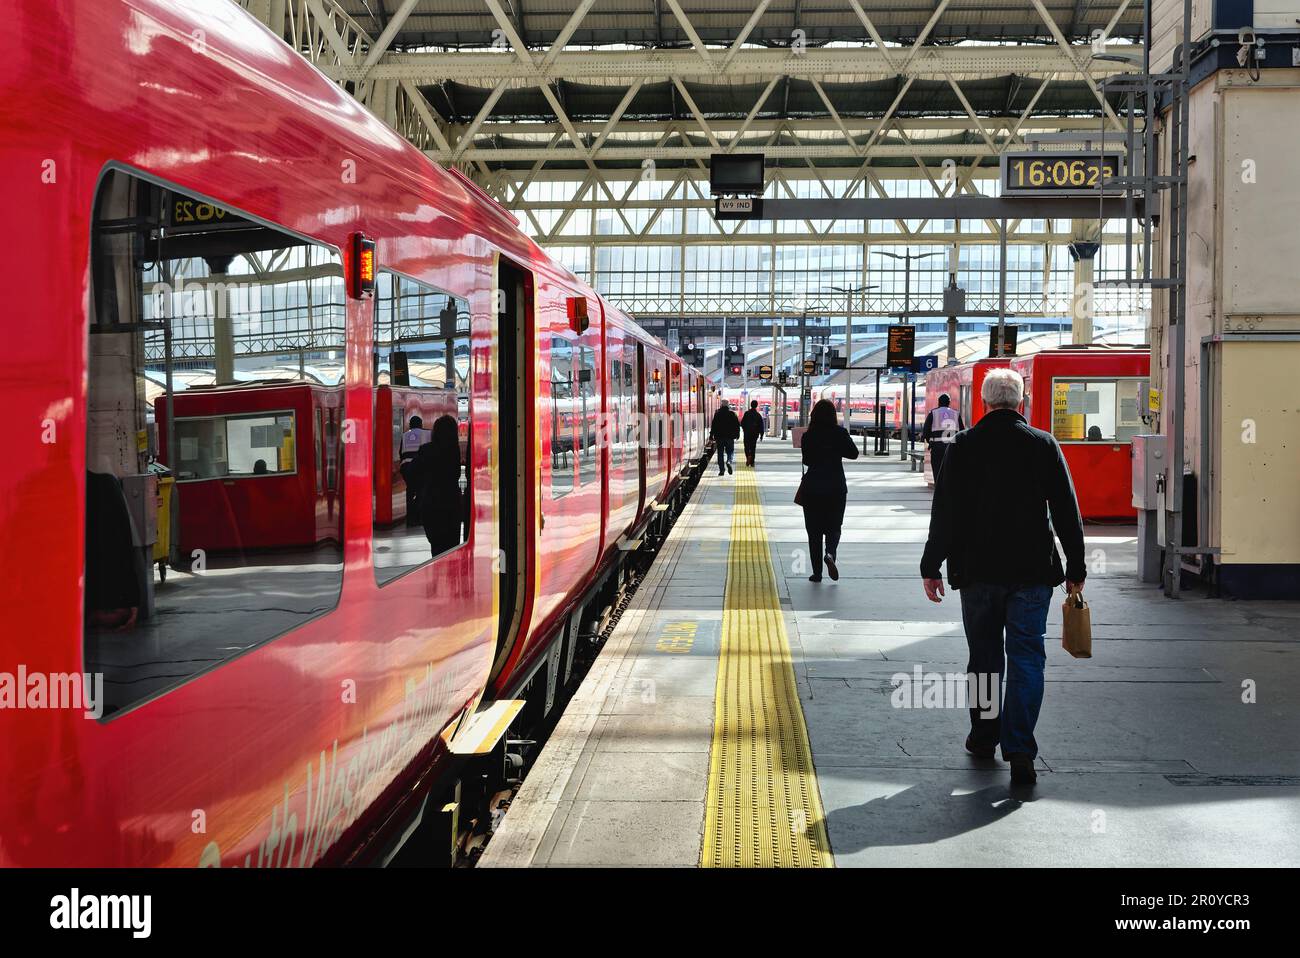 Un train de banlieue South Western Railway debout sur une plate-forme à la gare de Waterloo, Londres, Angleterre, Royaume-Uni Banque D'Images